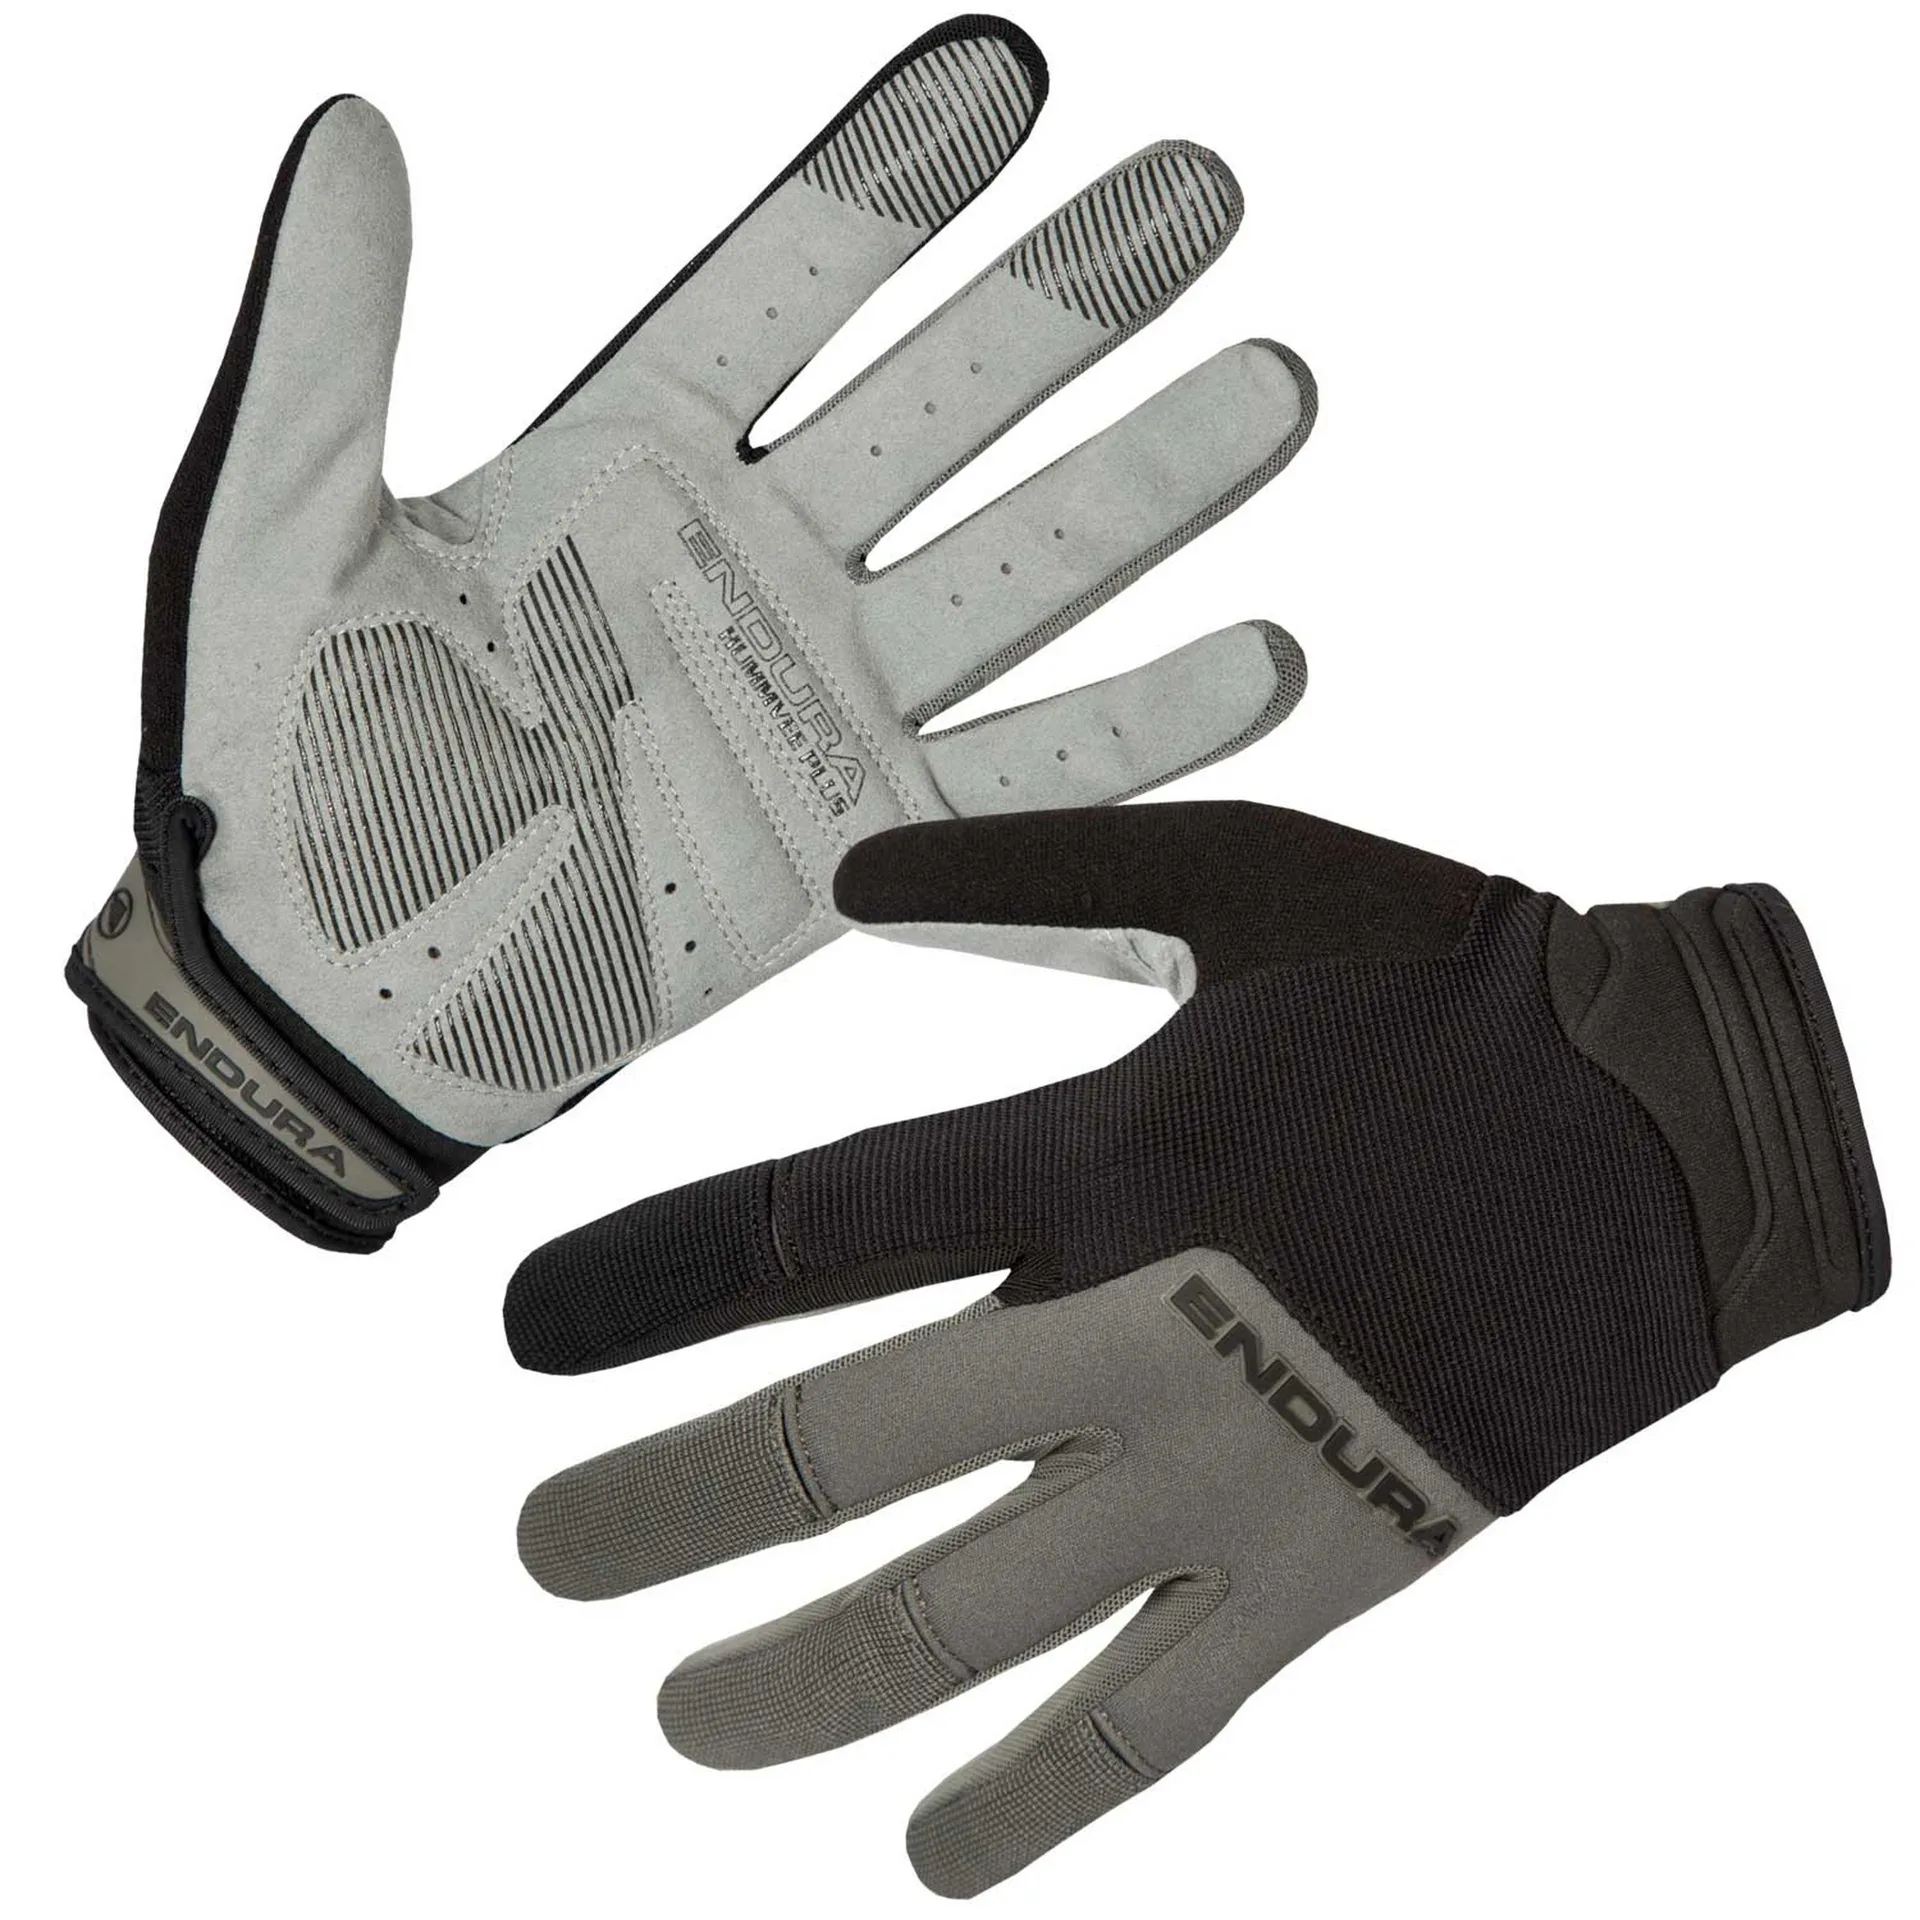 Endura Hummvee Plus Gloves II